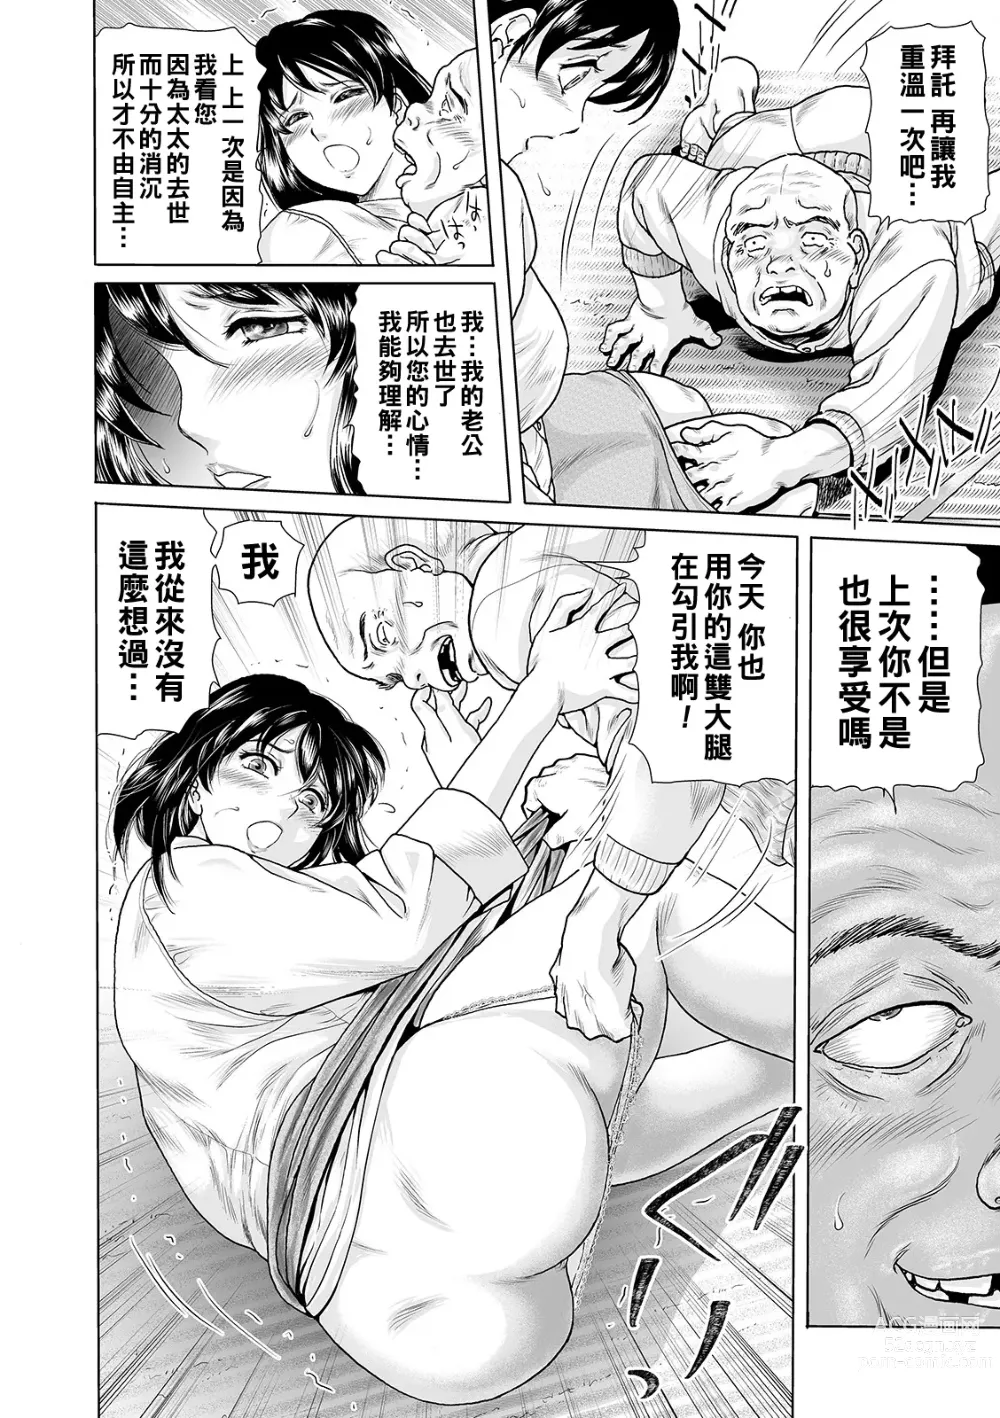 Page 2 of manga Ochitai Miboujin